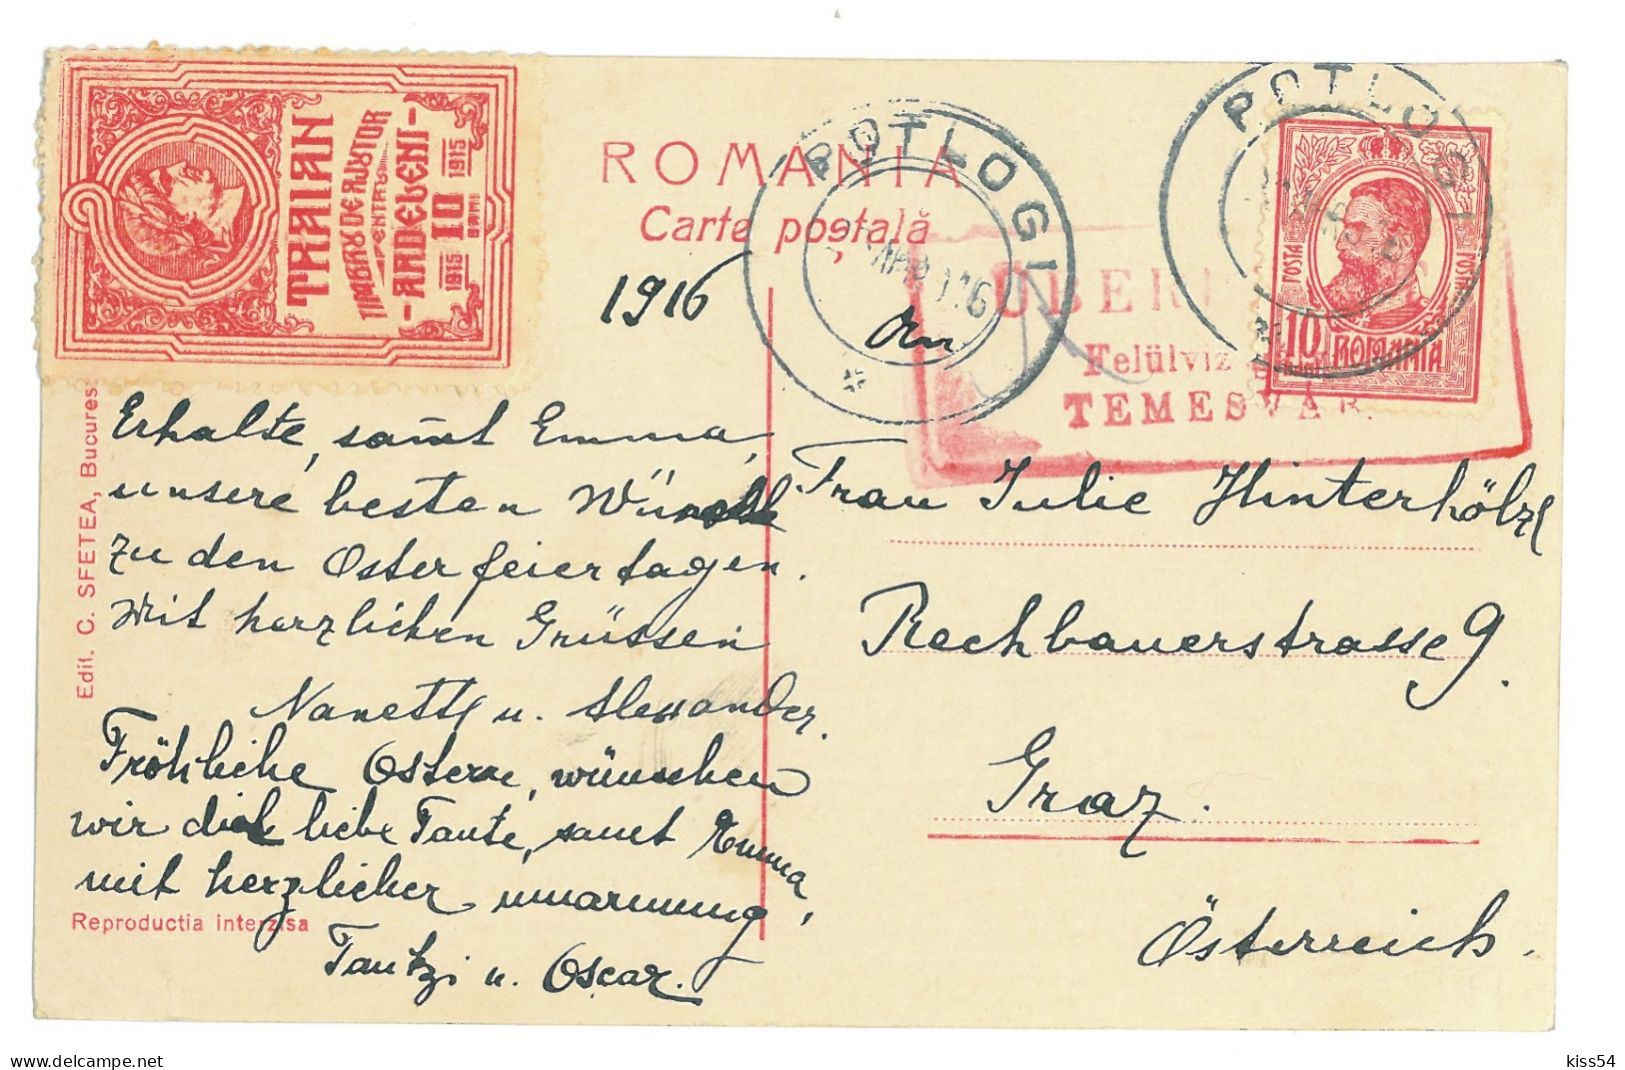 RO 47 - 16368 Queen MARY, Maria, Royalty, Regale, Romania - Old Postcard - Used - 1916 - Rumänien